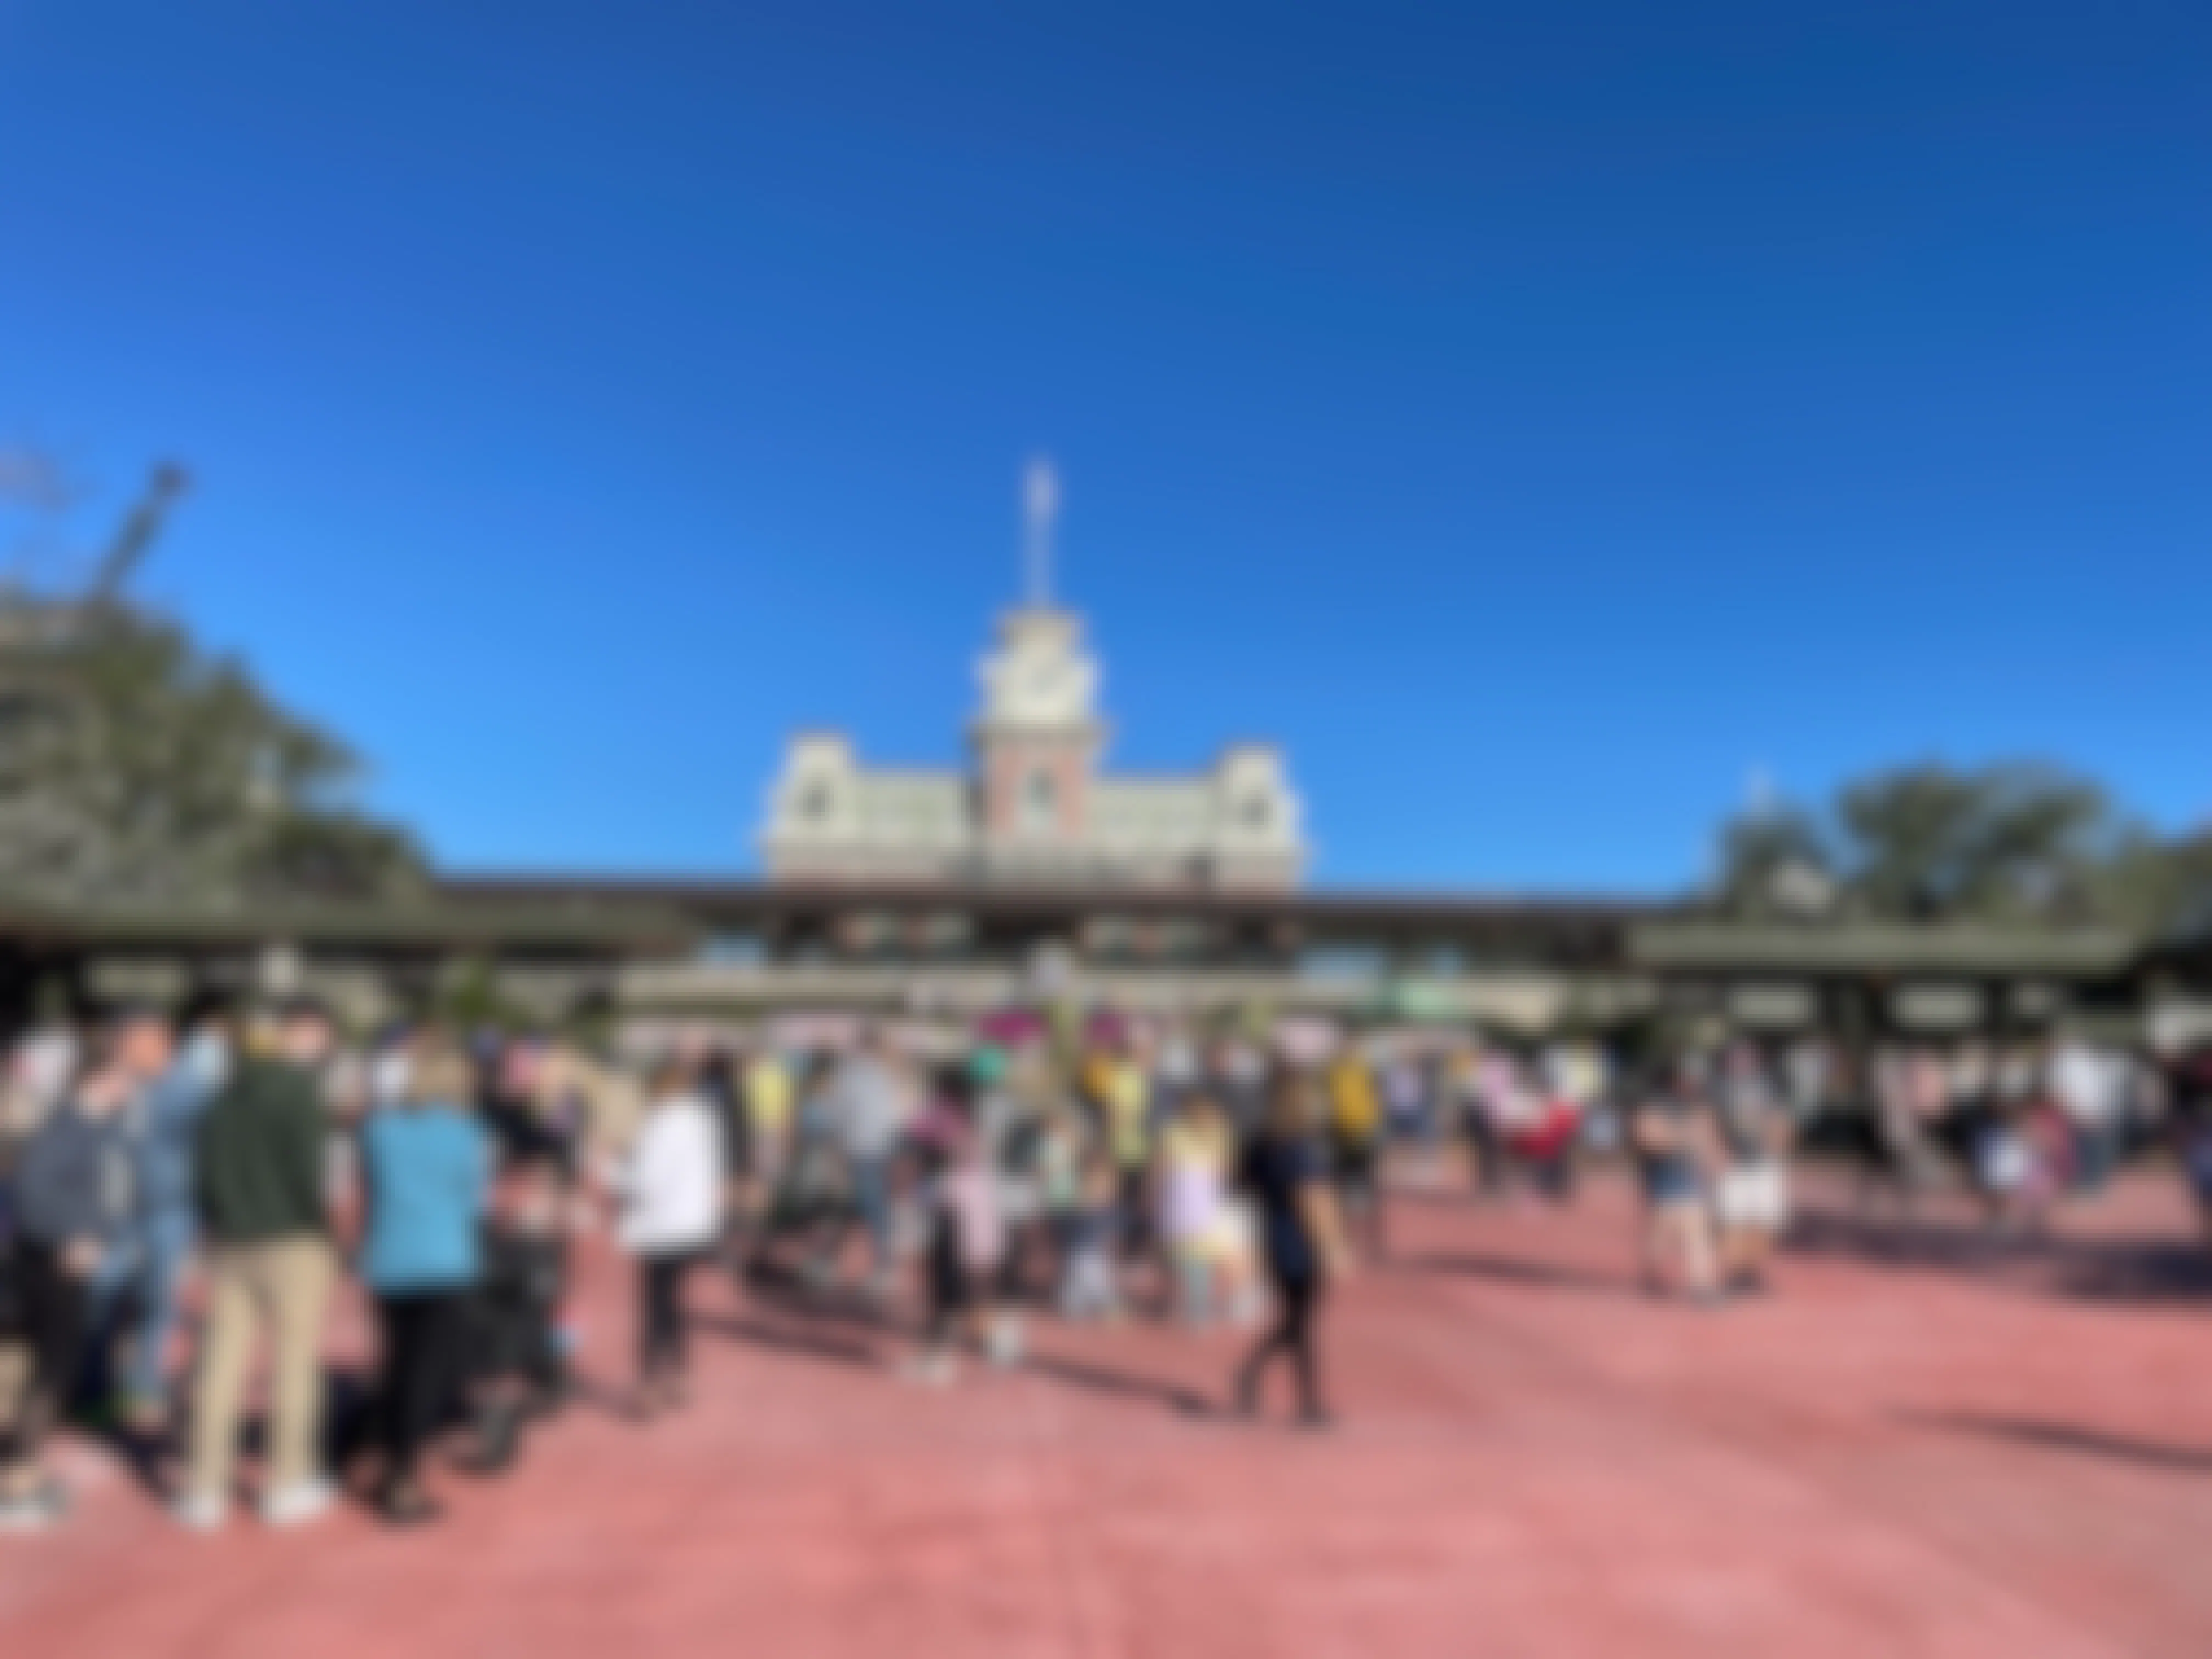 Crowded entryway at Walt Disney World's Magic Kingdom